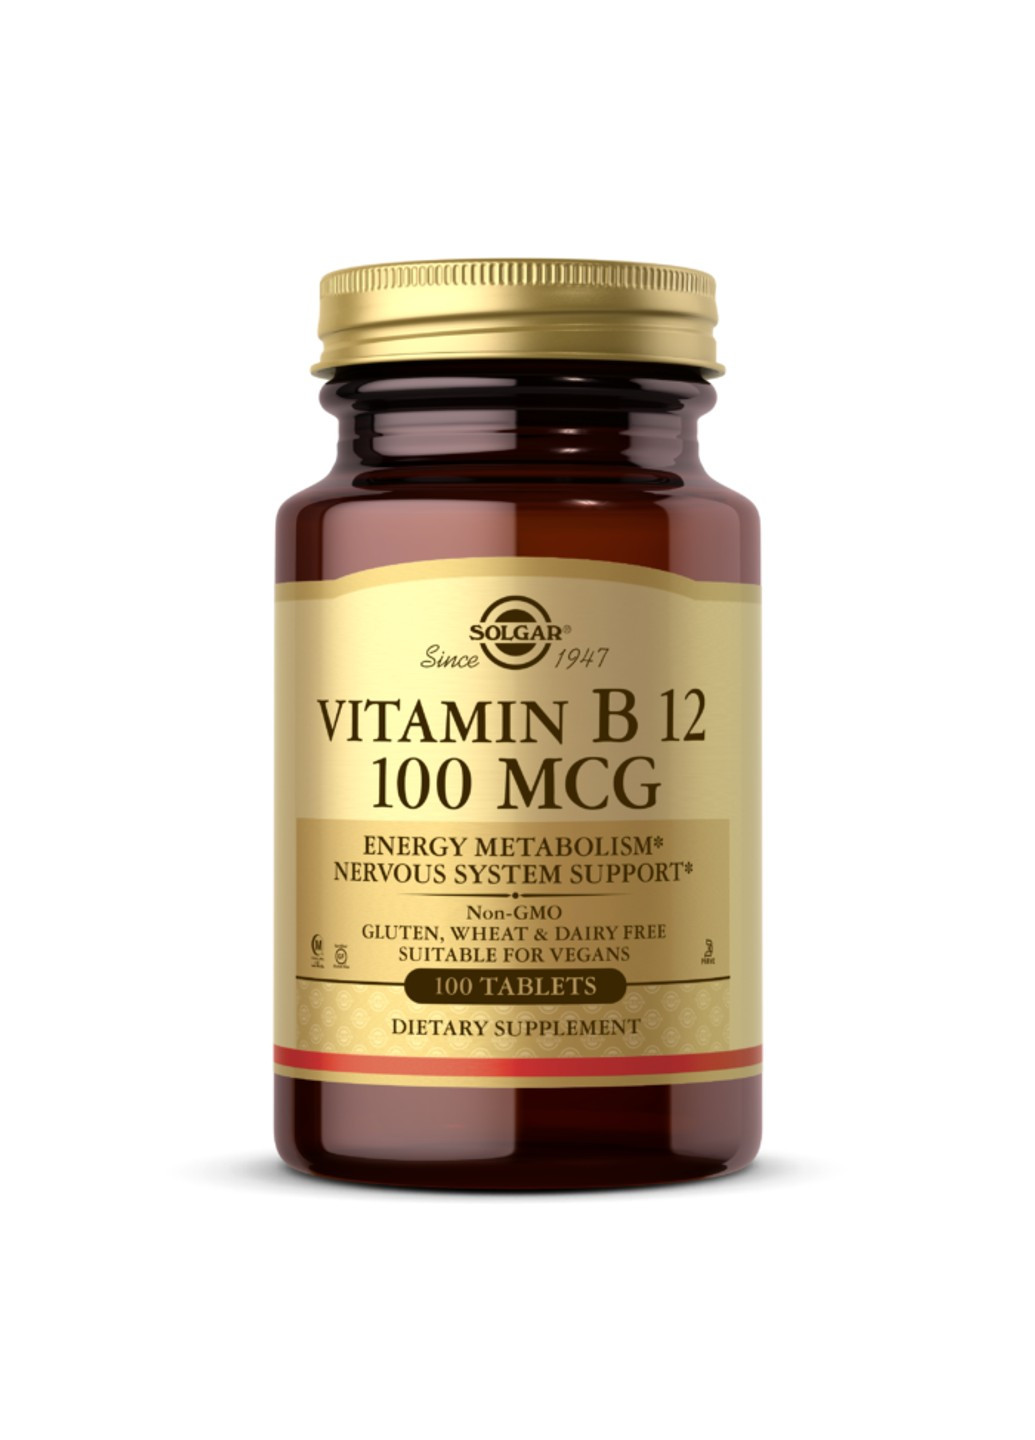 Витамин Б12 Vitamin B12 100 mcg (100 табл) цианокобаламин солгар Solgar (255407982)